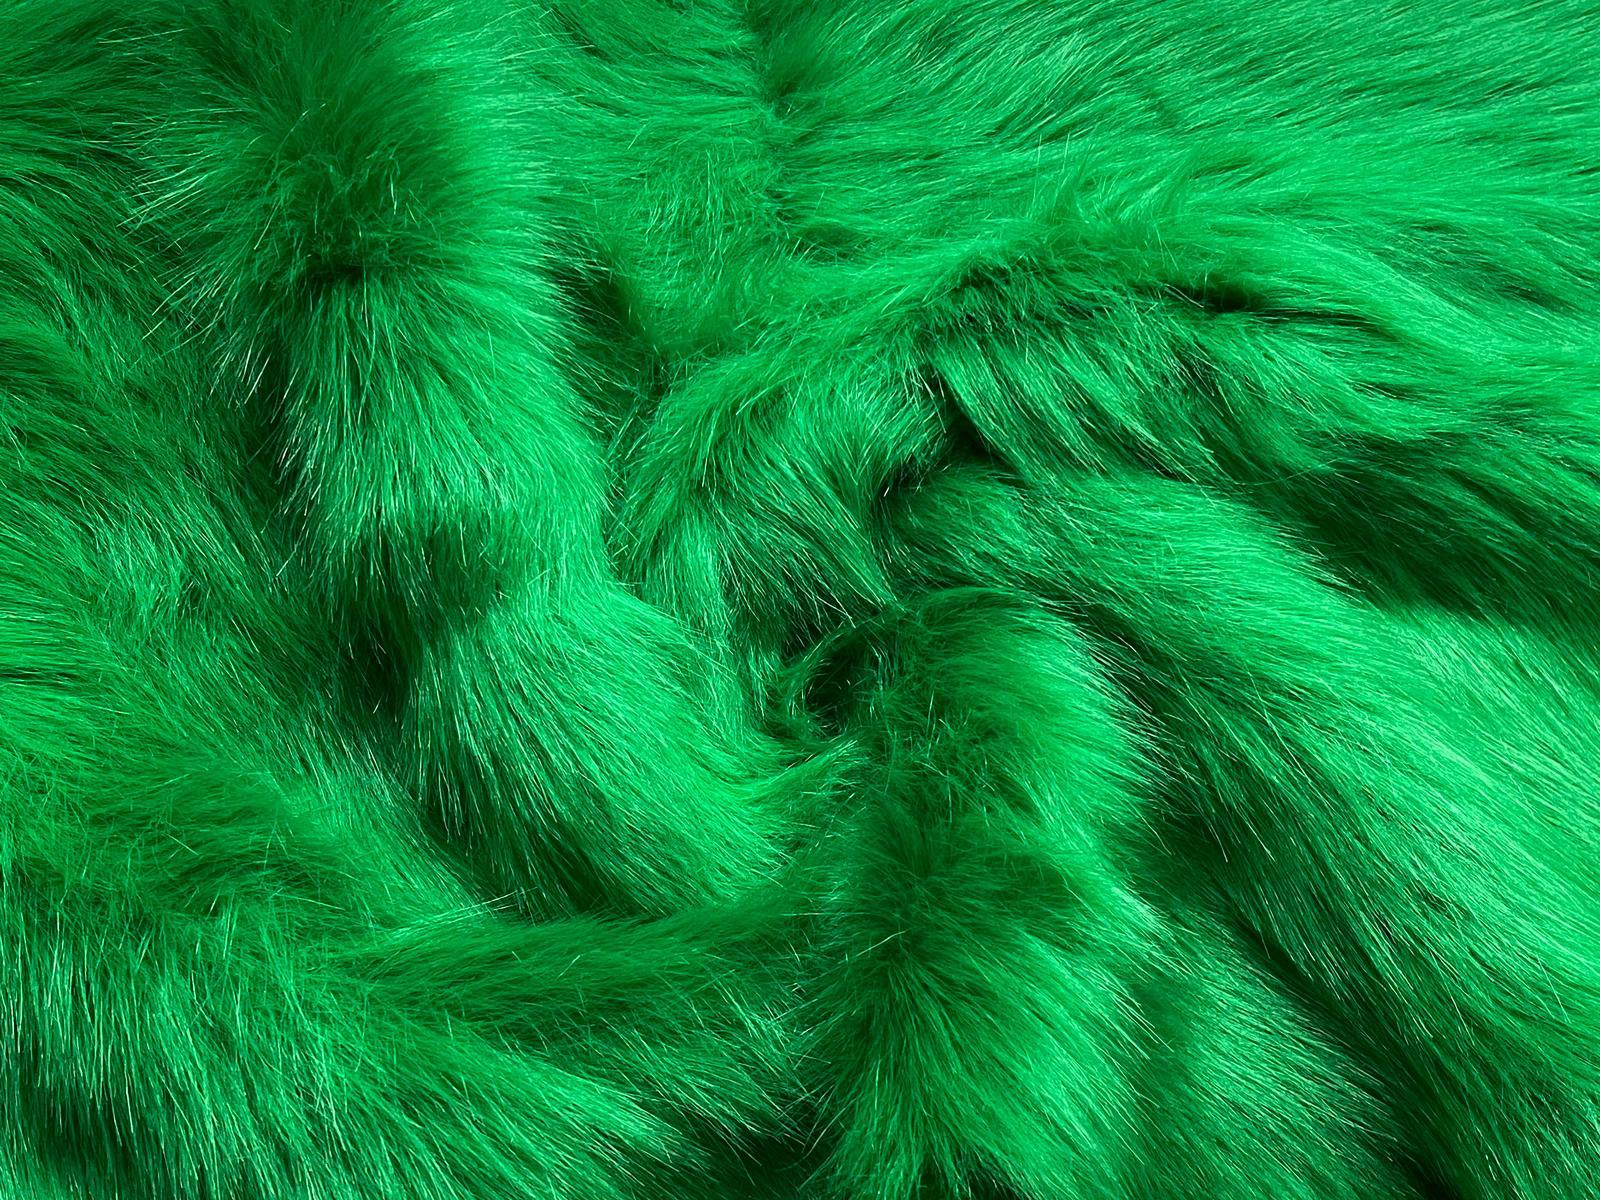 Super Luxury Faux Fur Fabric Material - PLUSH SUPER SOFT CREAM